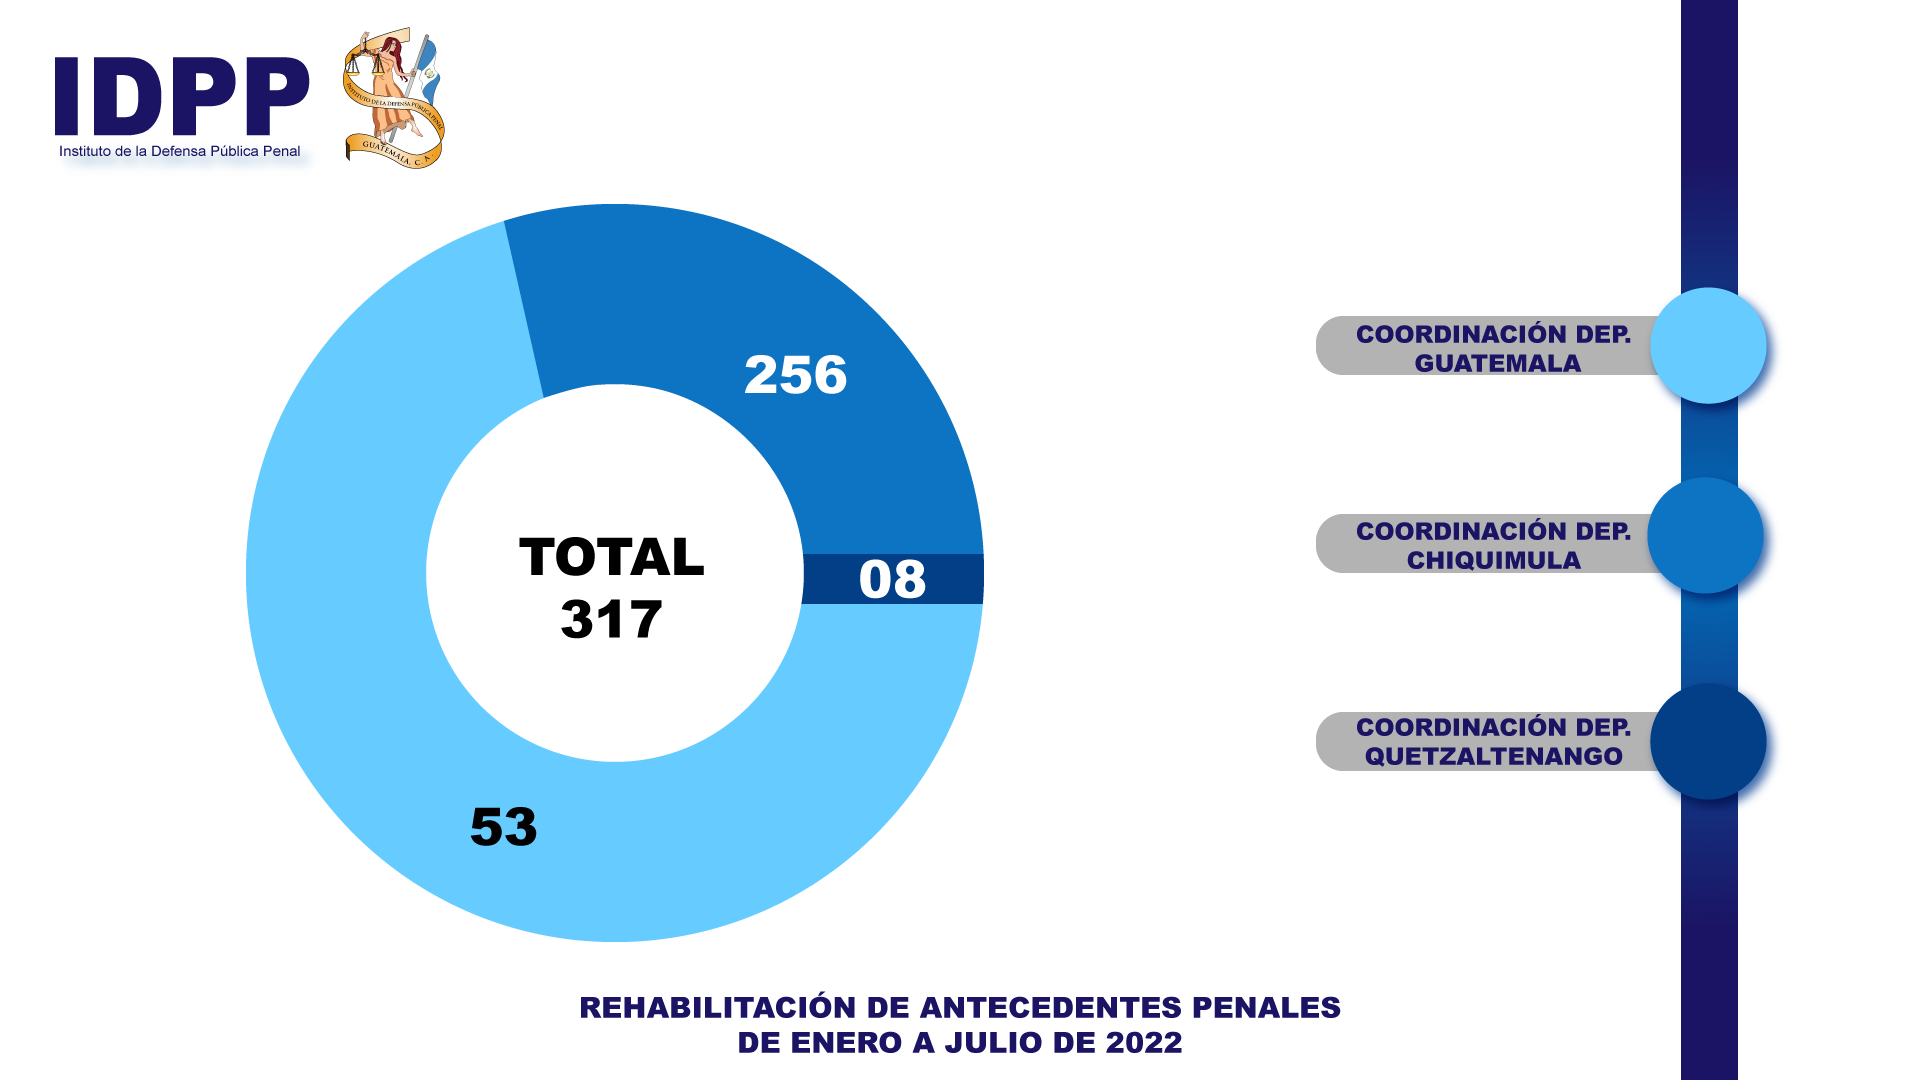 Entre los servicios del Instituto de la Defensa Pública Penal se encuentra la rehabilitación de antecedentes penales, proceso que se realiza en la Coordinación Departamental de Ejecución en Guatemala, Chiquimula y Quetzaltenango.